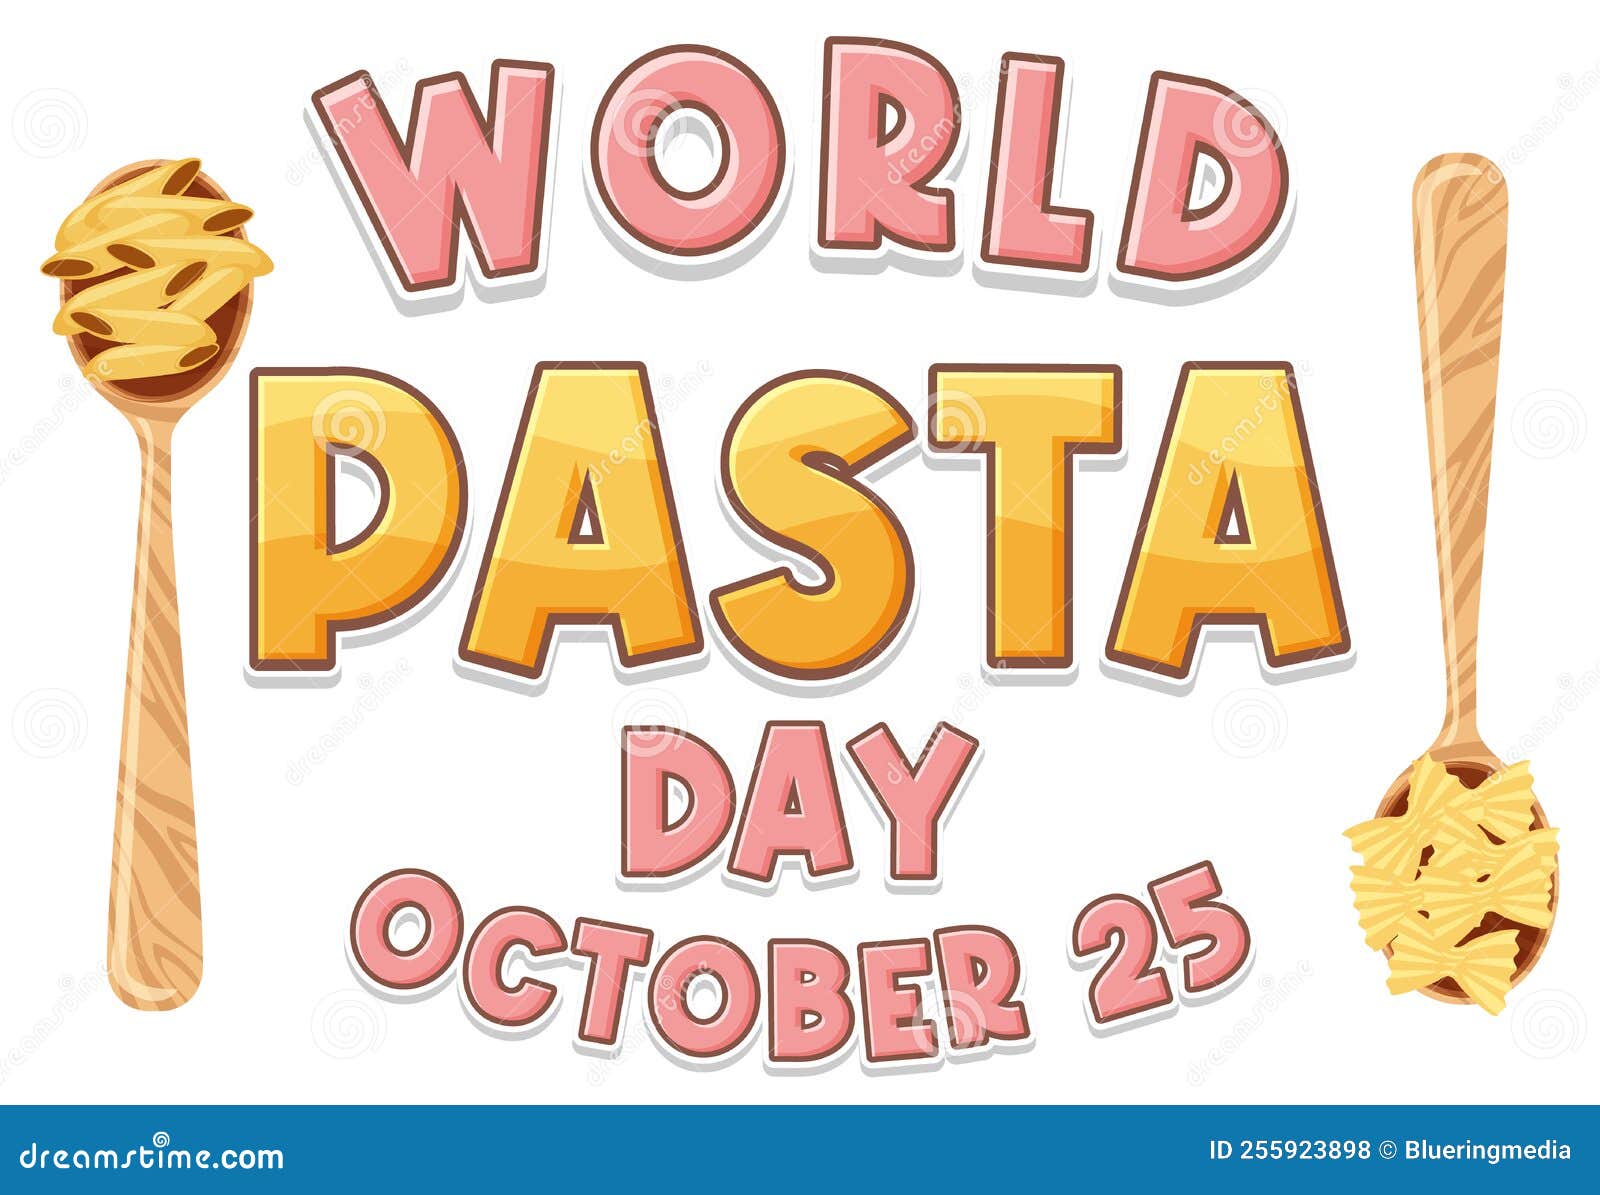 World Pasta Day Banner Design Stock Vector Illustration of fettuccine